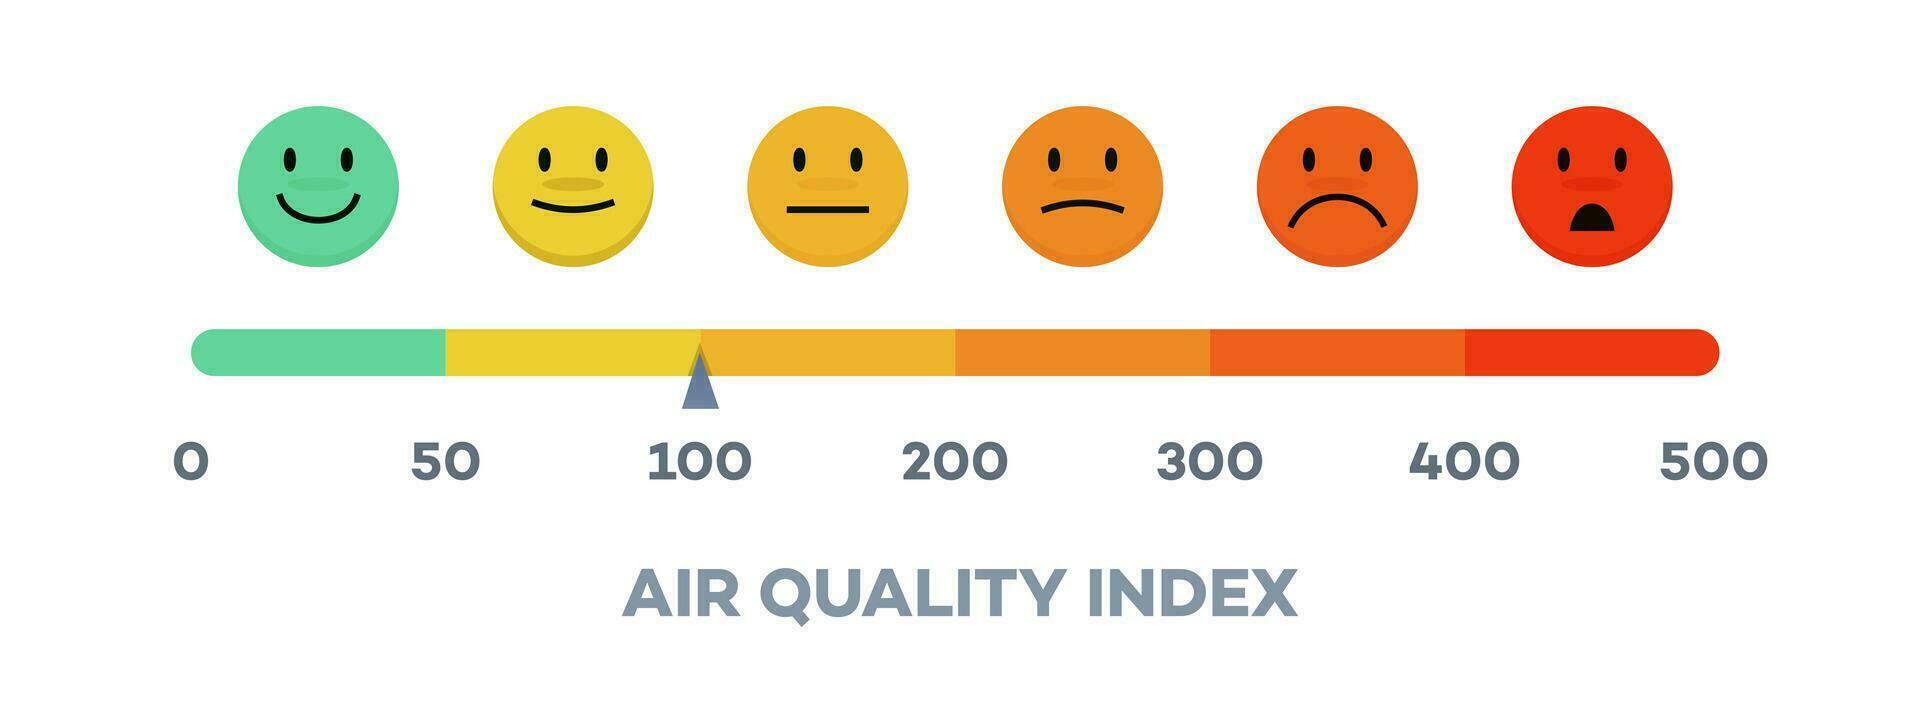 aria qualità indice scala con emoji vettore